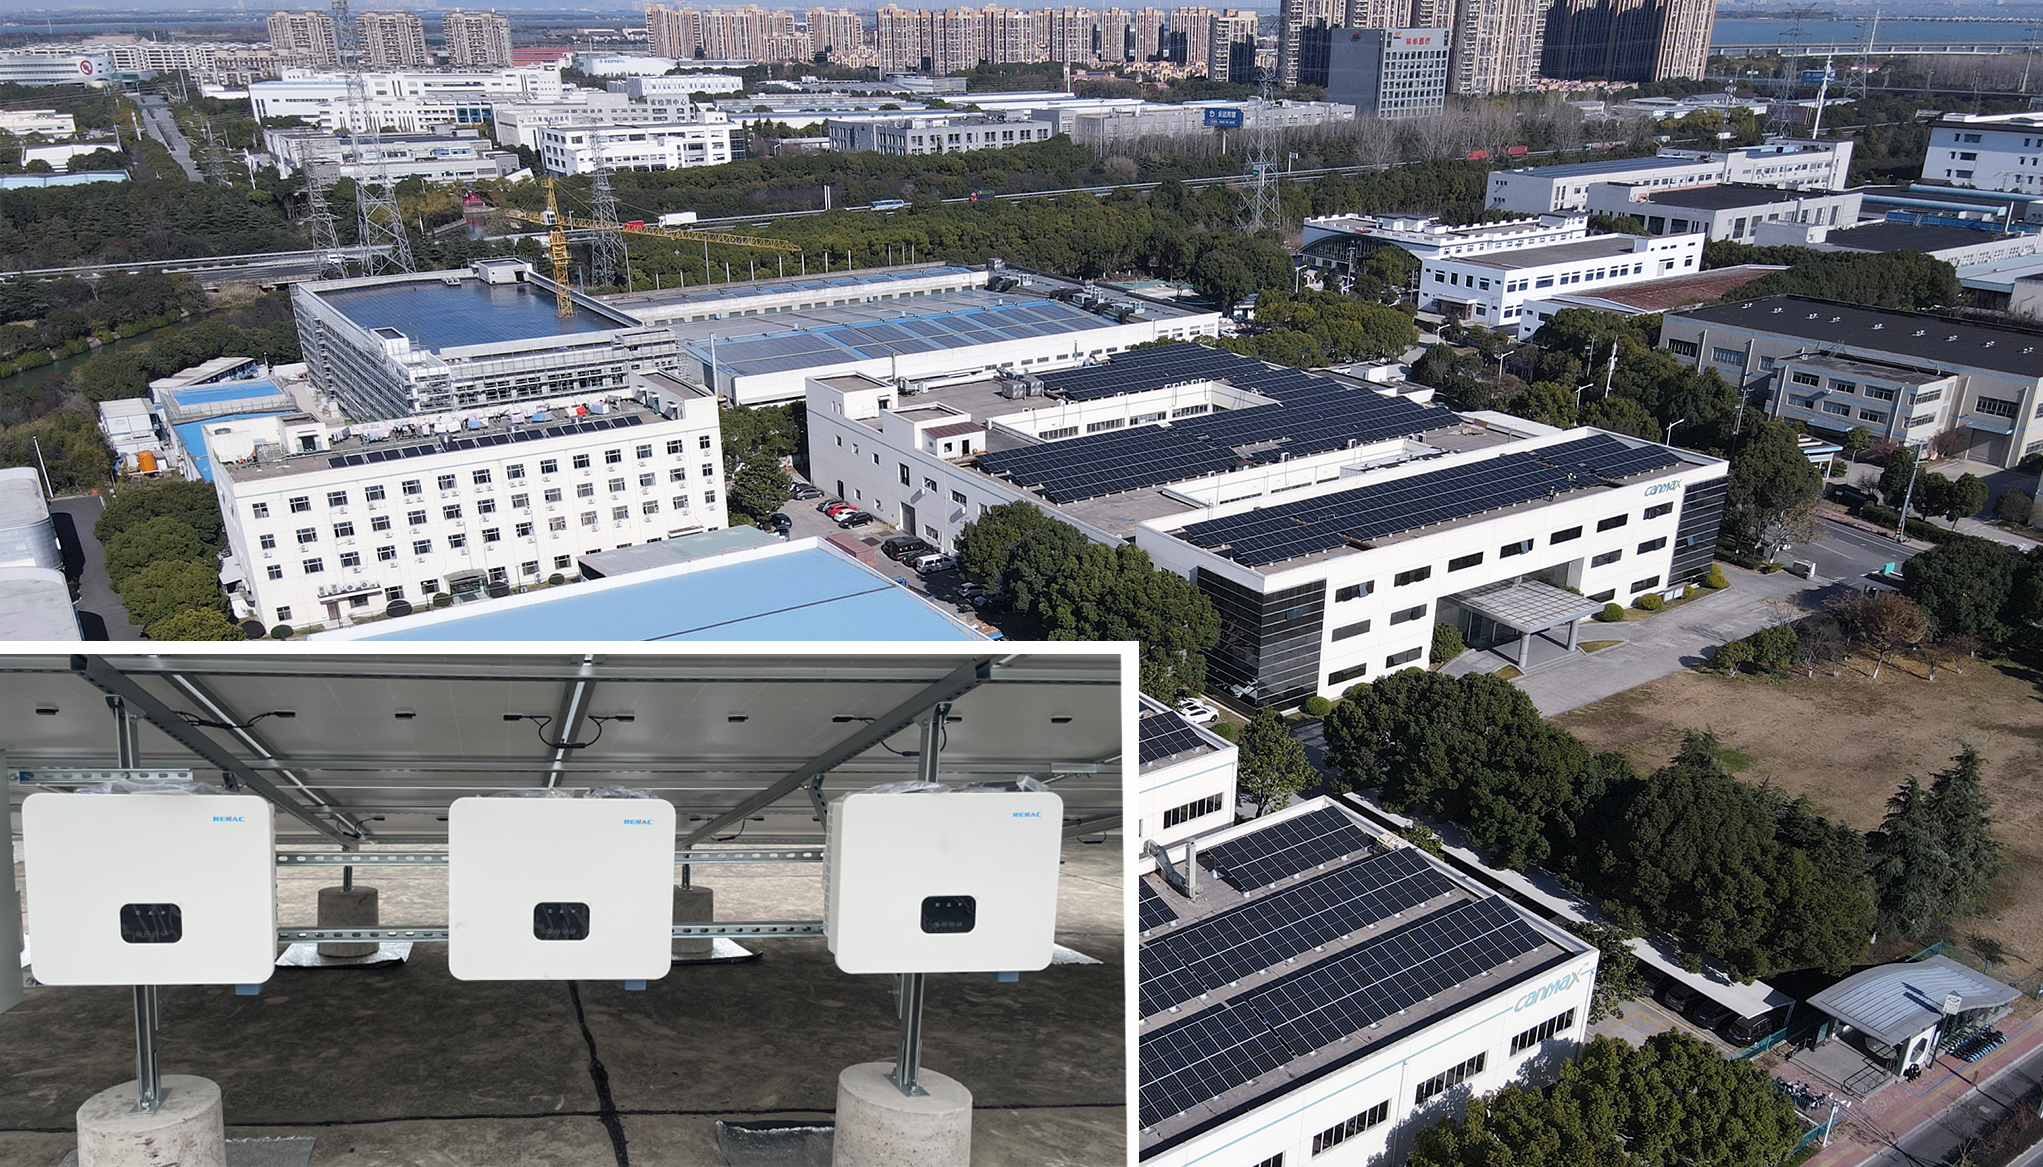 Ново РЕНАЦ-ово комерцијално 1МВ комерцијално фотонапонско постројење које је самостално инвестирало успешно је пуштено у рад у Суџоуу, Кина!